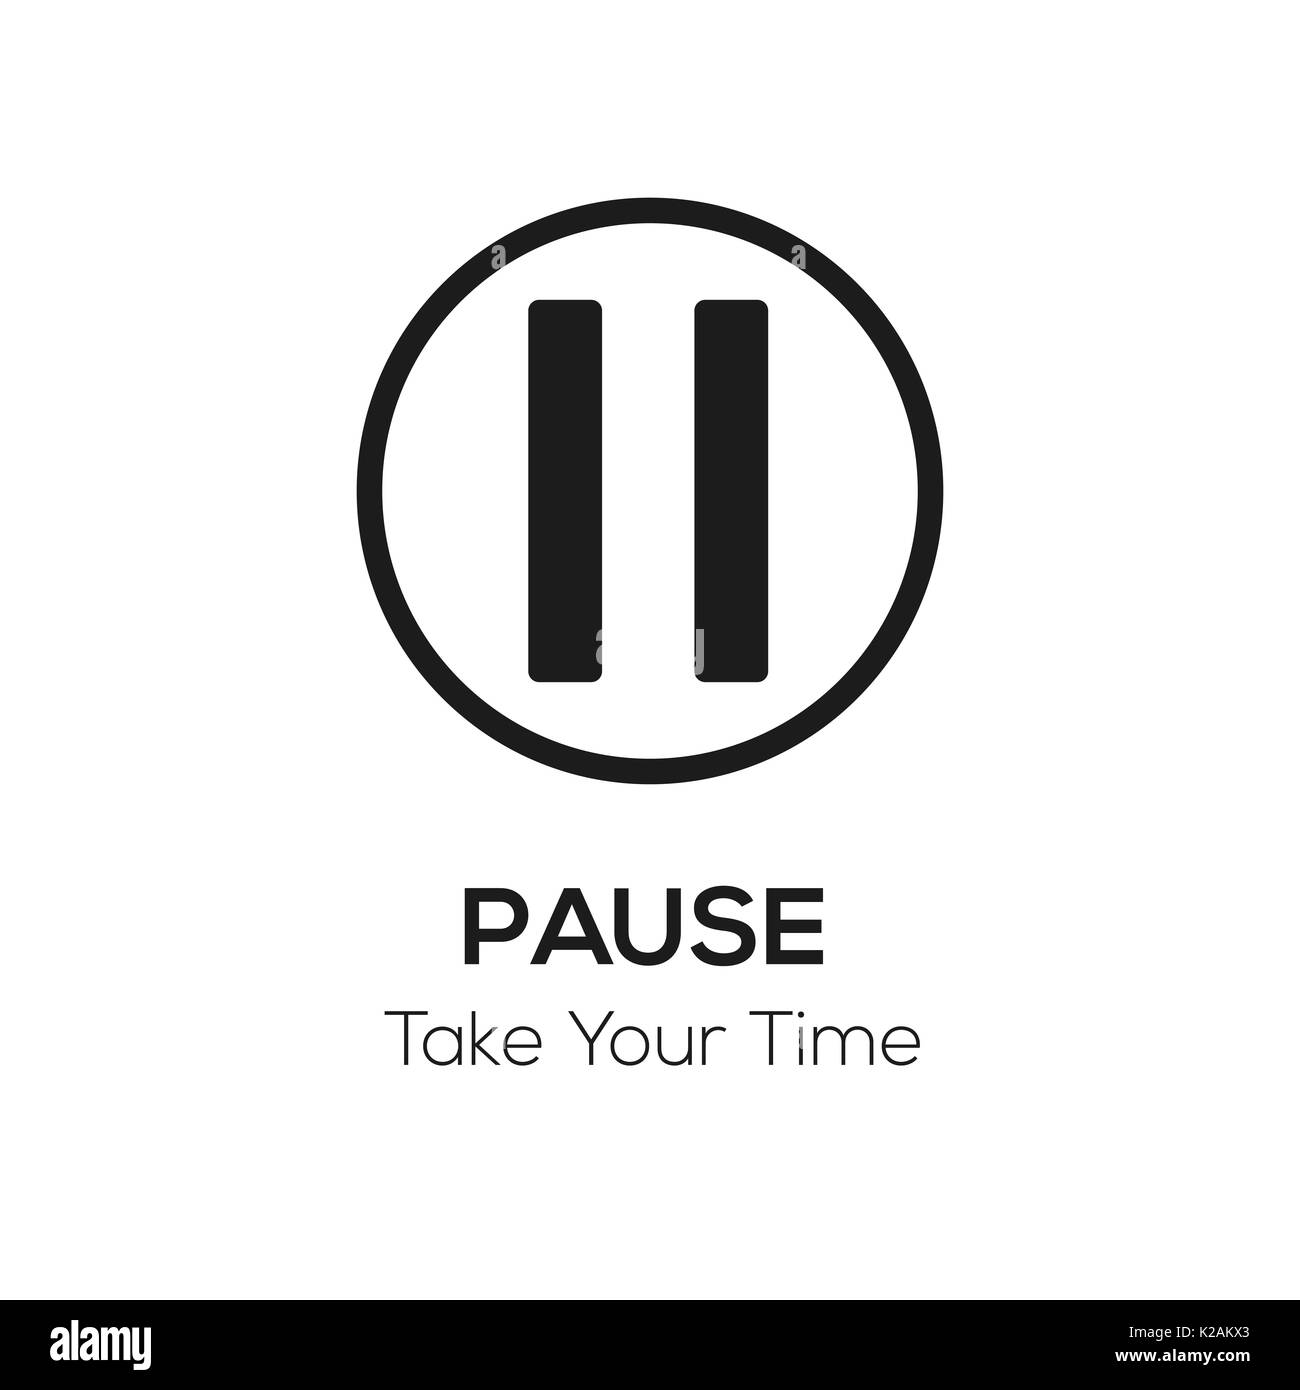 Bouton Pause illustration avec des mots Prenez votre temps, s'éloigner de tout concept, visuel noir et blanc Banque D'Images